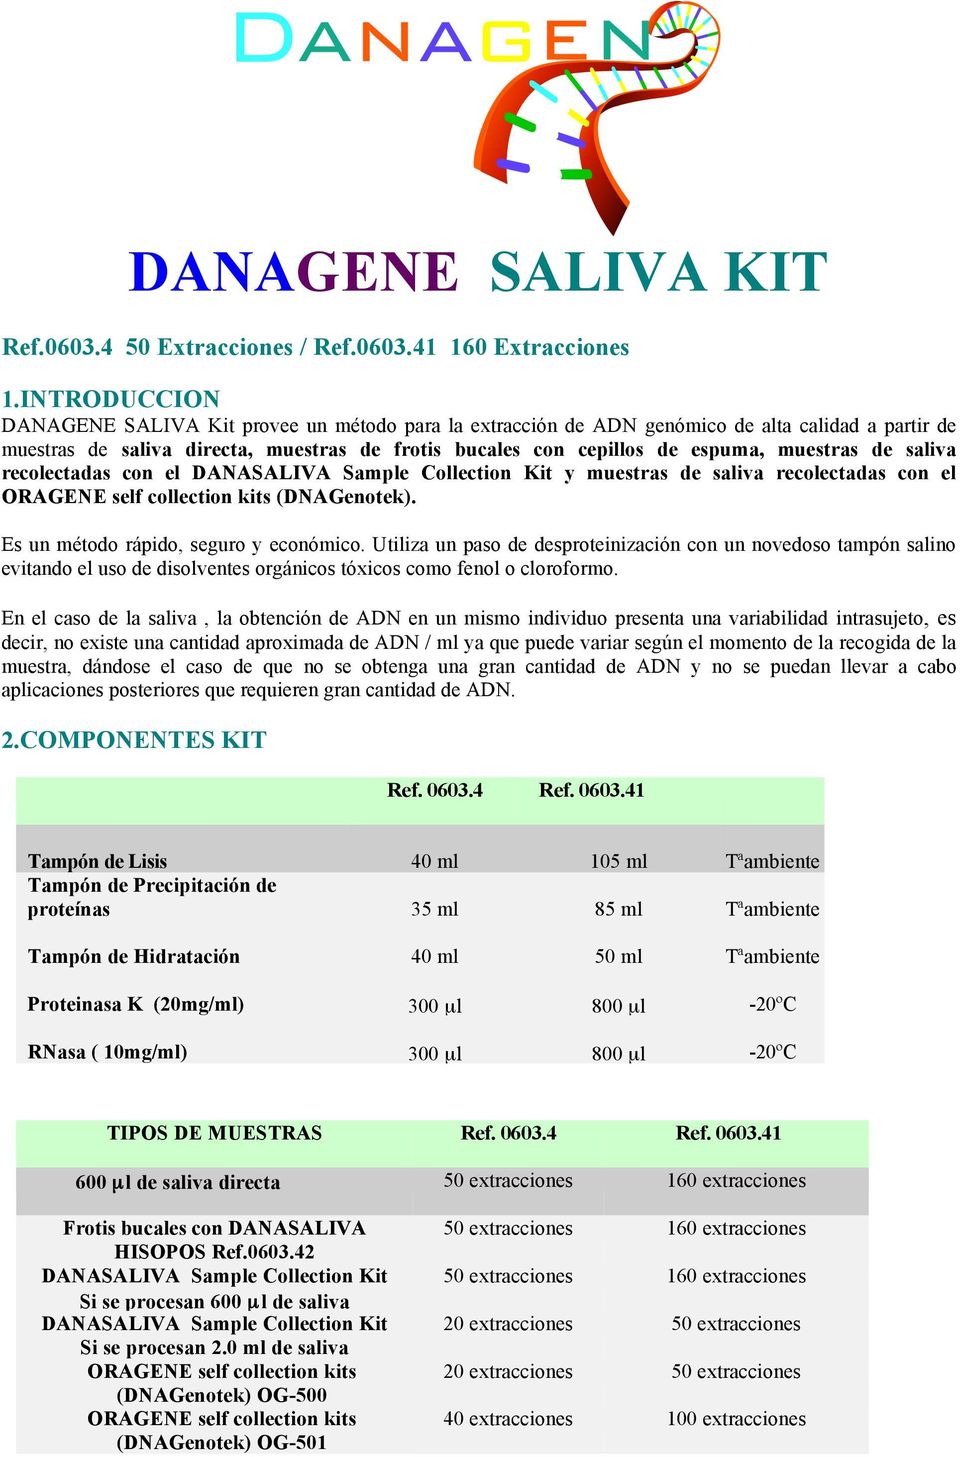 muestras de saliva recolectadas con el DANASALIVA Sample Collection Kit y muestras de saliva recolectadas con el ORAGENE self collection kits (DNAGenotek). Es un método rápido, seguro y económico.